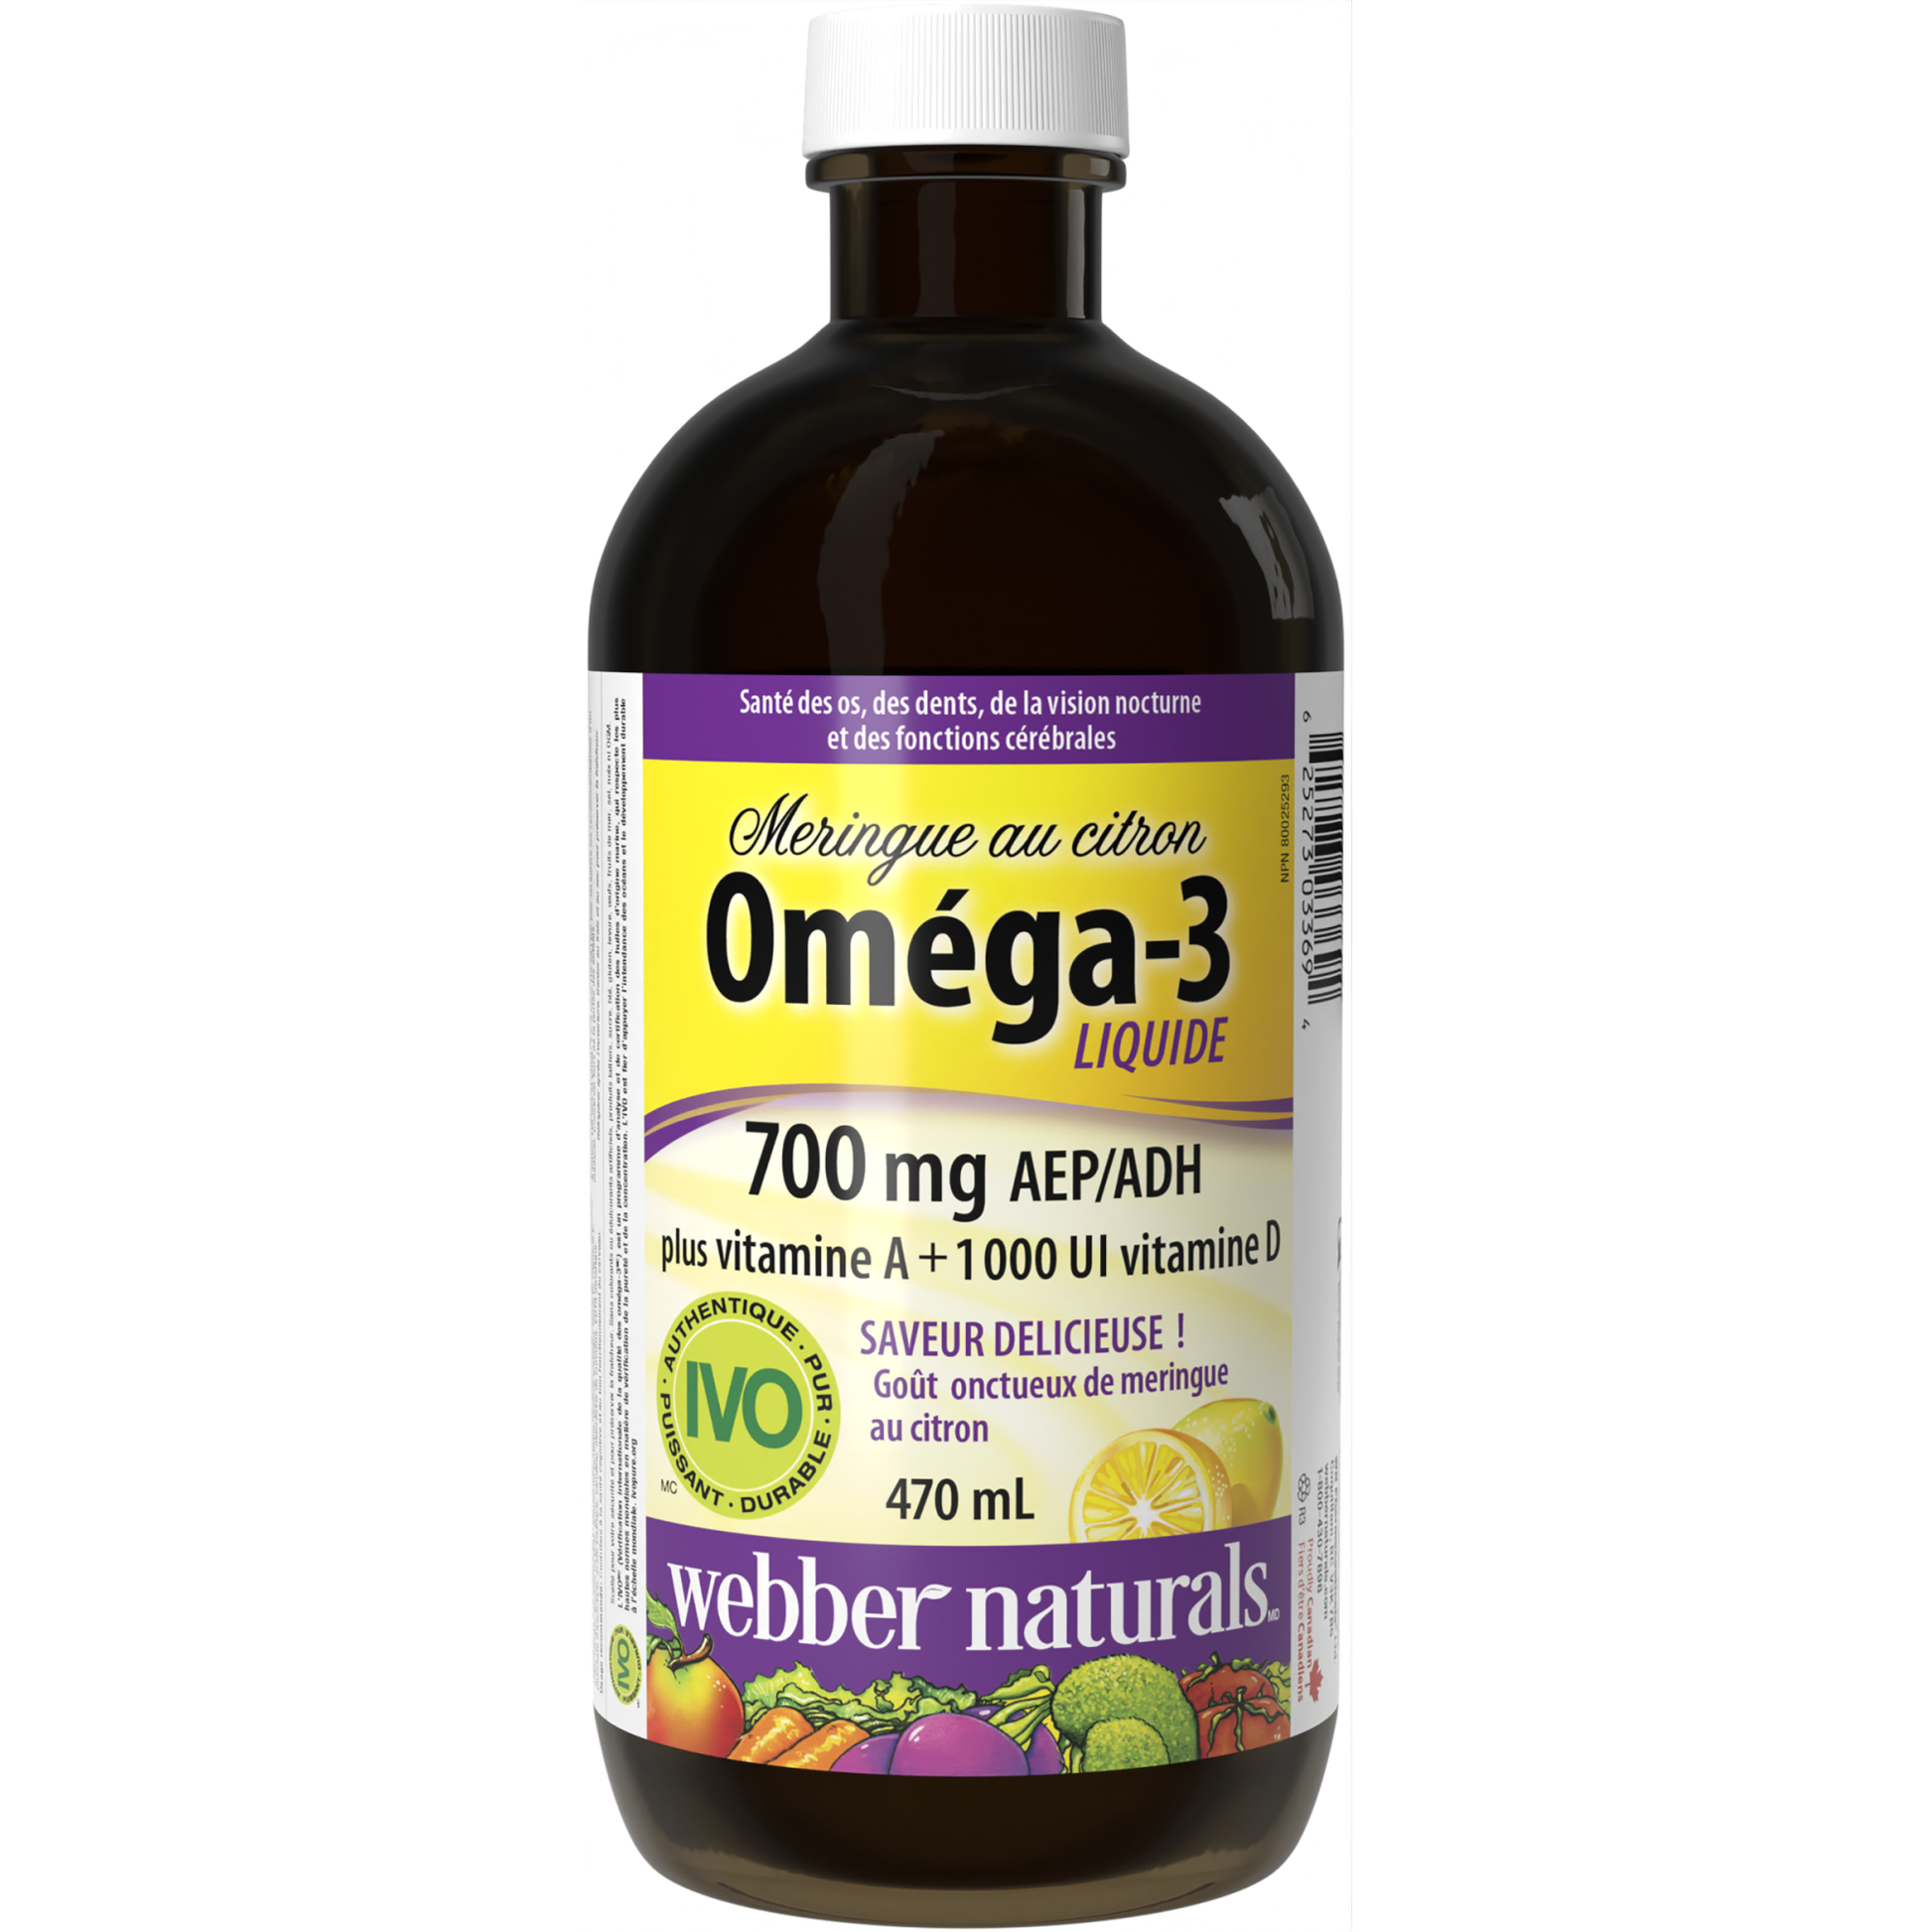 Liquide Oméga-3 Plus vitamine A + 1 000 UI vitamine D 700 mg AEP/ADH Meringue au citron for Webber Naturals|v|hi-res|WN3369